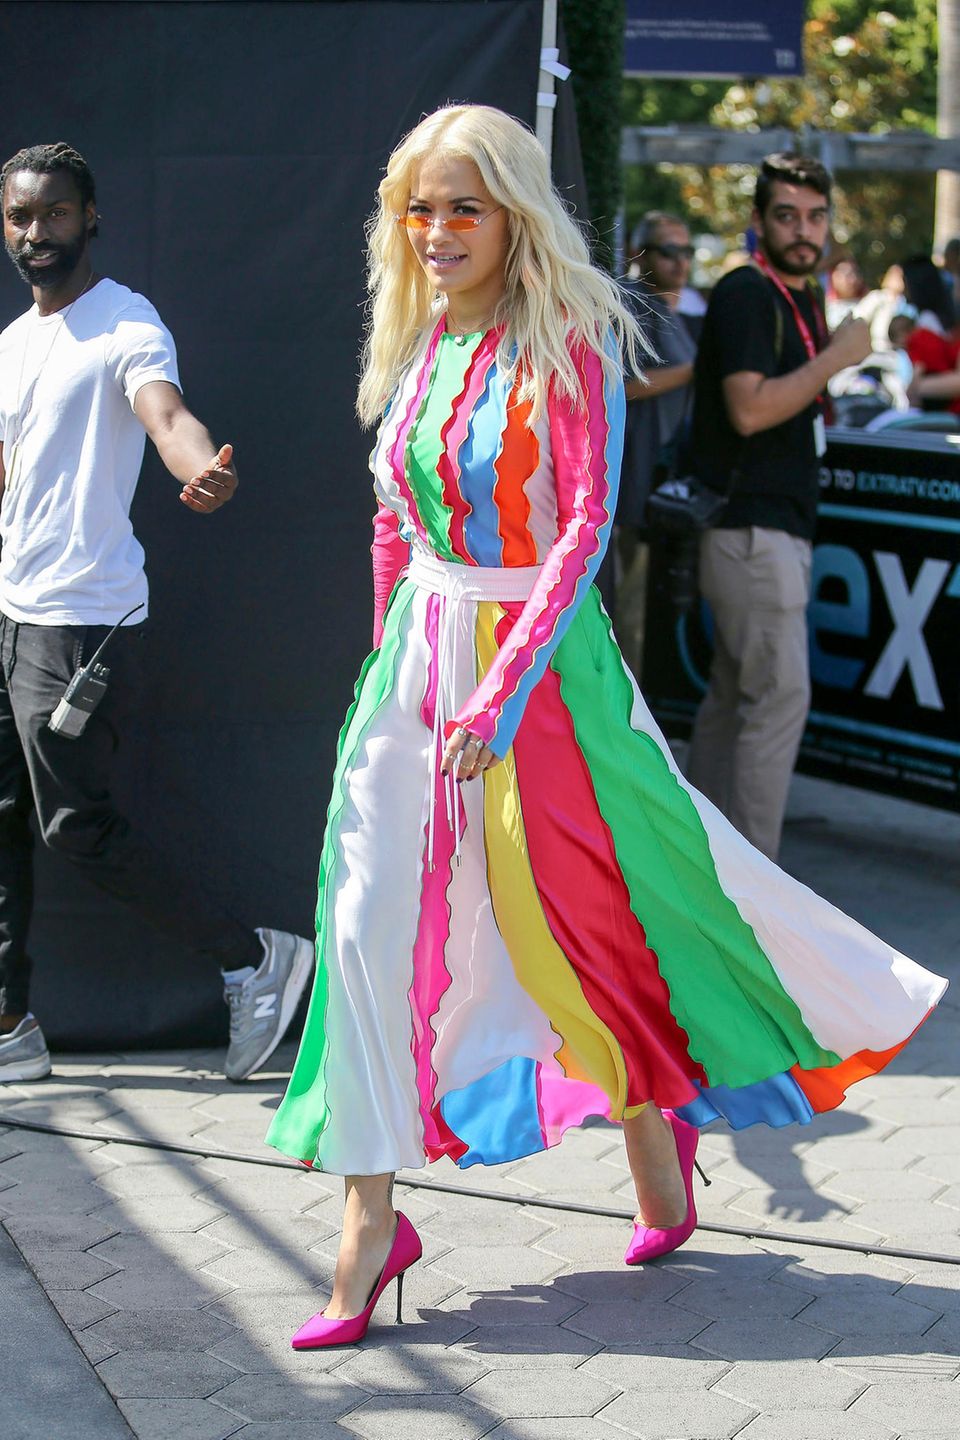 In Los Angeles erwischen Paparazzi Rita Ora in diesem farbenfrohen Gute-Laune-Look auf der Straße. In einem gestreiften Ensemble in bunten Regenbogenfarben des nepalesisch-amerikanischen Designers Prabal Gurung. Besonderer Hingucker: Der flatterhafte Rock, der sich so schön im Wind bewegt.